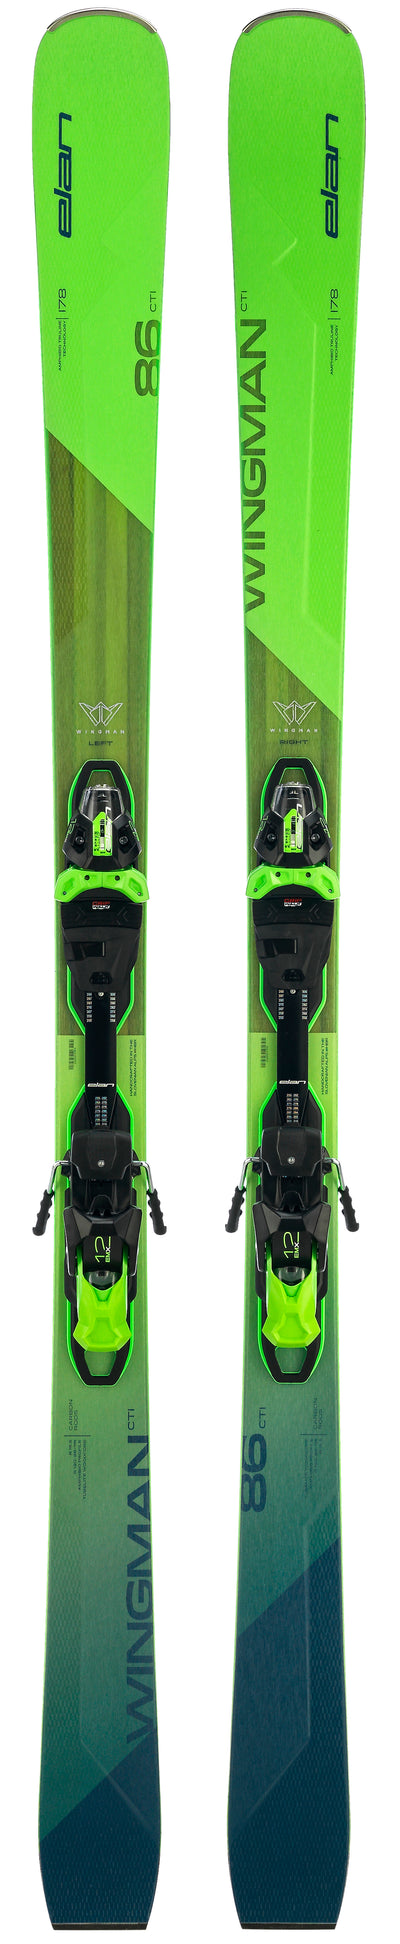 Belastingen Dynamiek diepgaand Elan Wingman 86 CTi Skis 2023 w/bindings - Ski Depot / RaceSkis.com